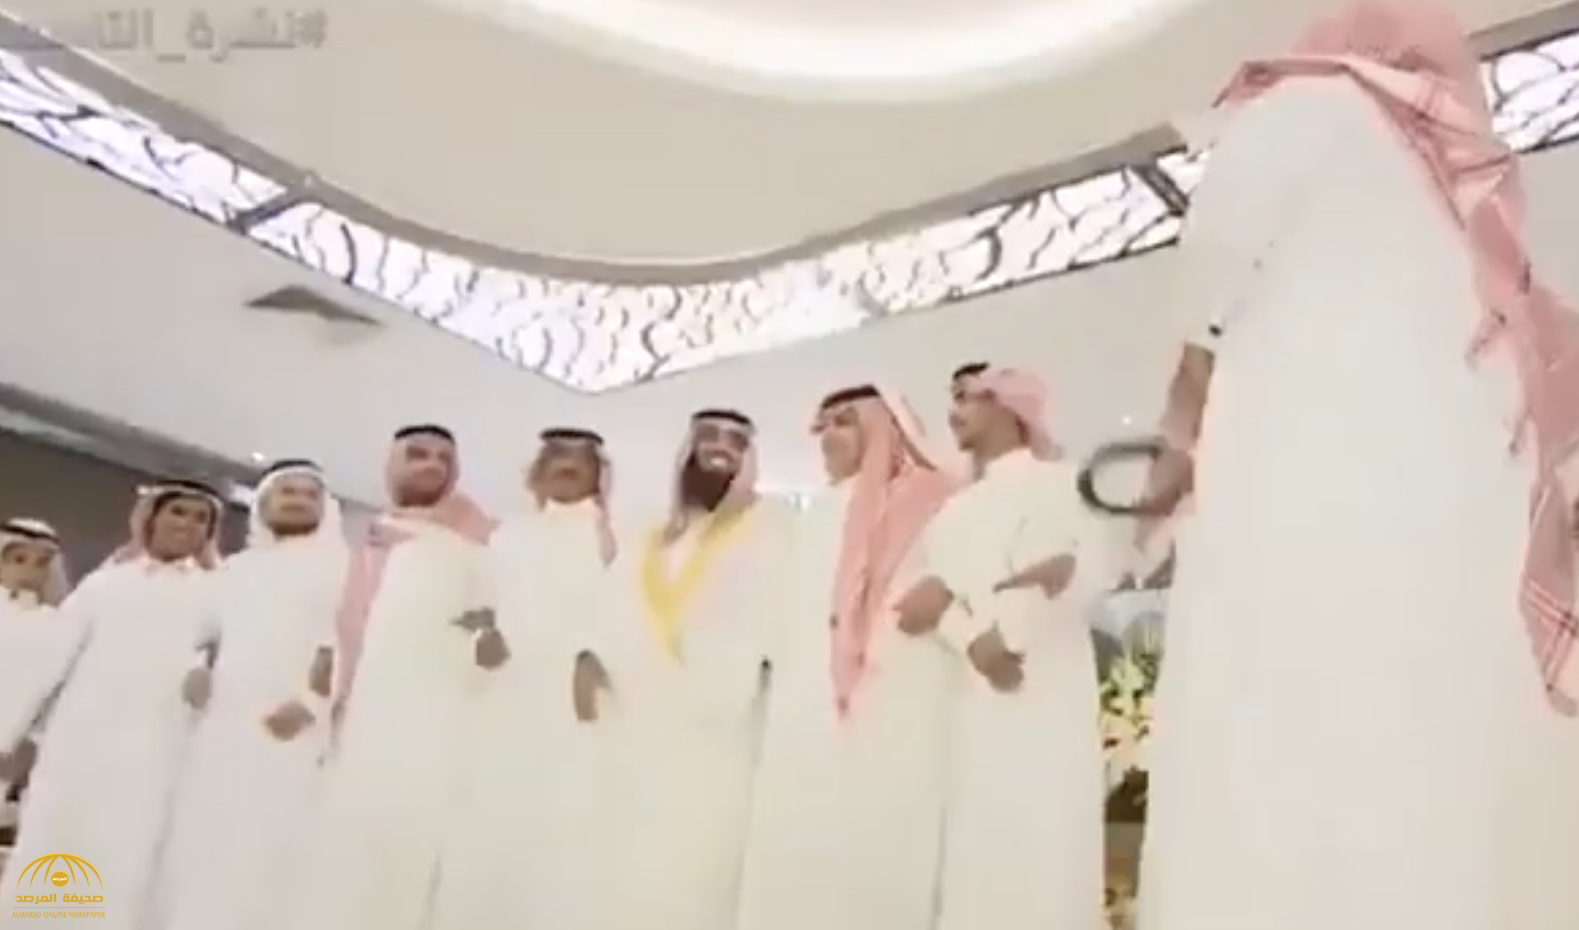 شاهد .. أول فيديو من حفل الزواج الذي أقامته "أمن الدولة" للسجين "محمد القحطاني" من داخل أسوار سجن الحائر